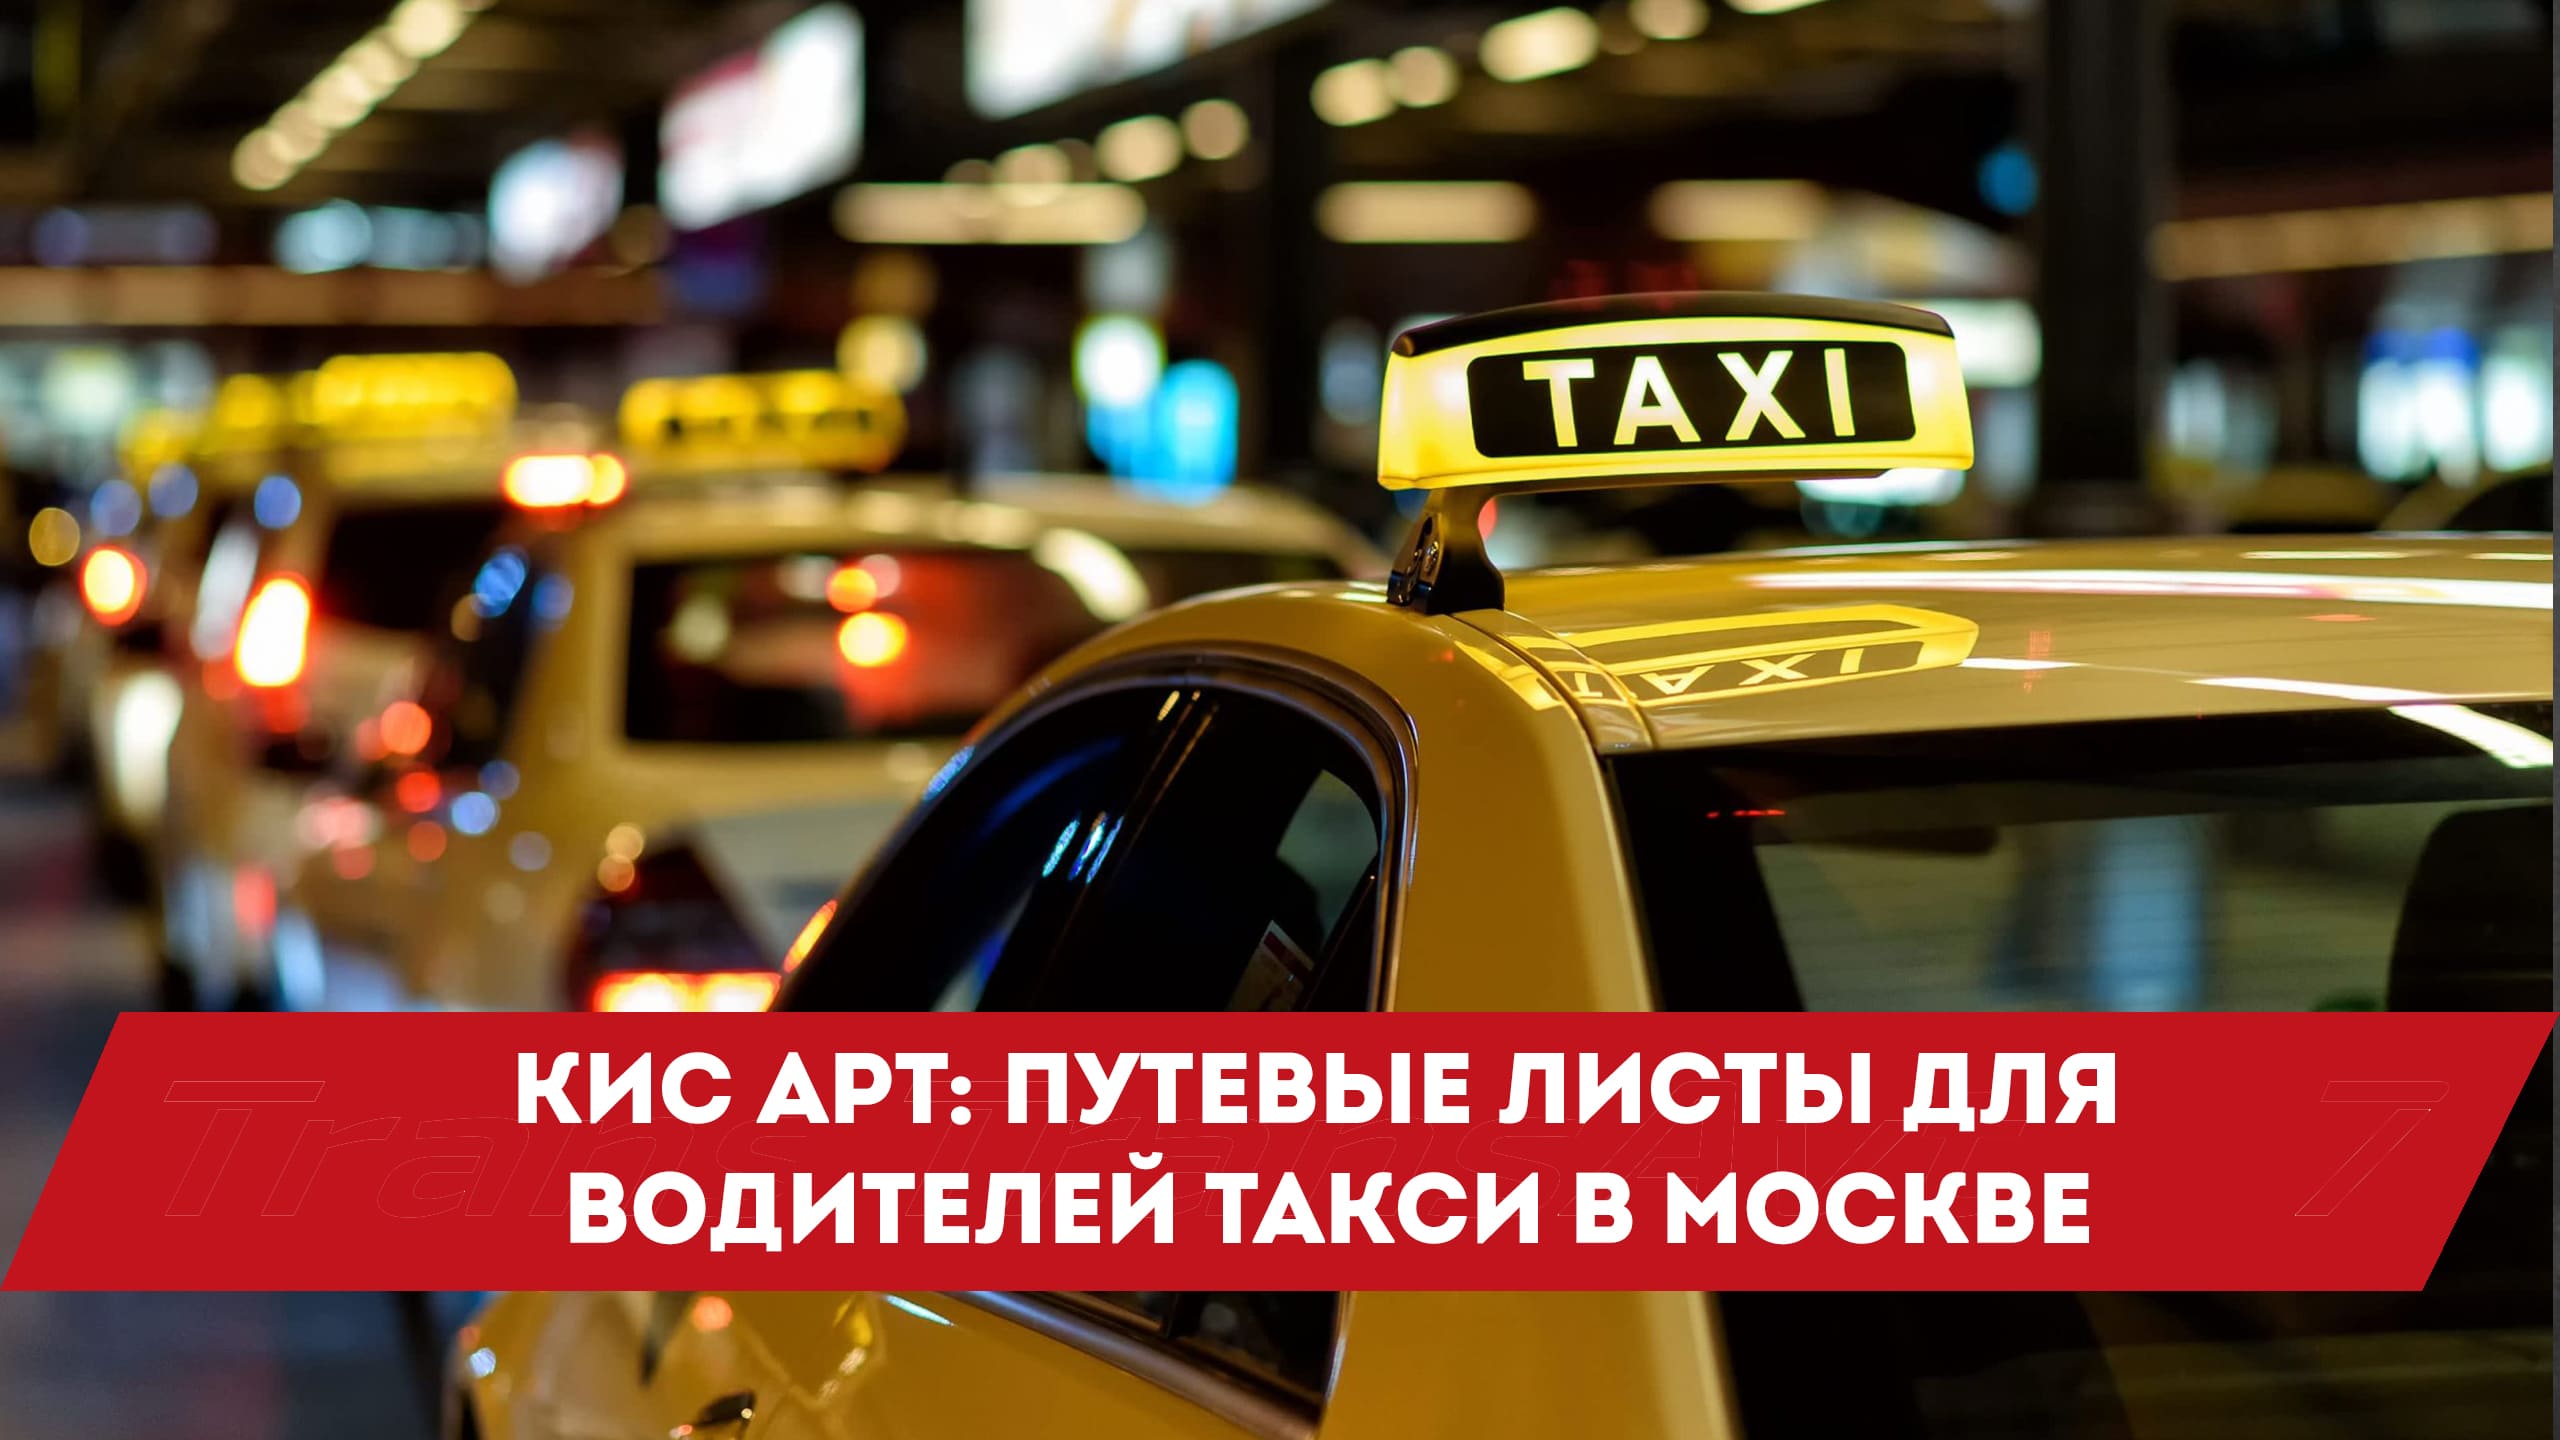 Аналитики водитель такси. Кис арт такси. Кис арт такси регистрация водителей Москва. Кисарт для такси. Кисарт для такси регистрация водителей.